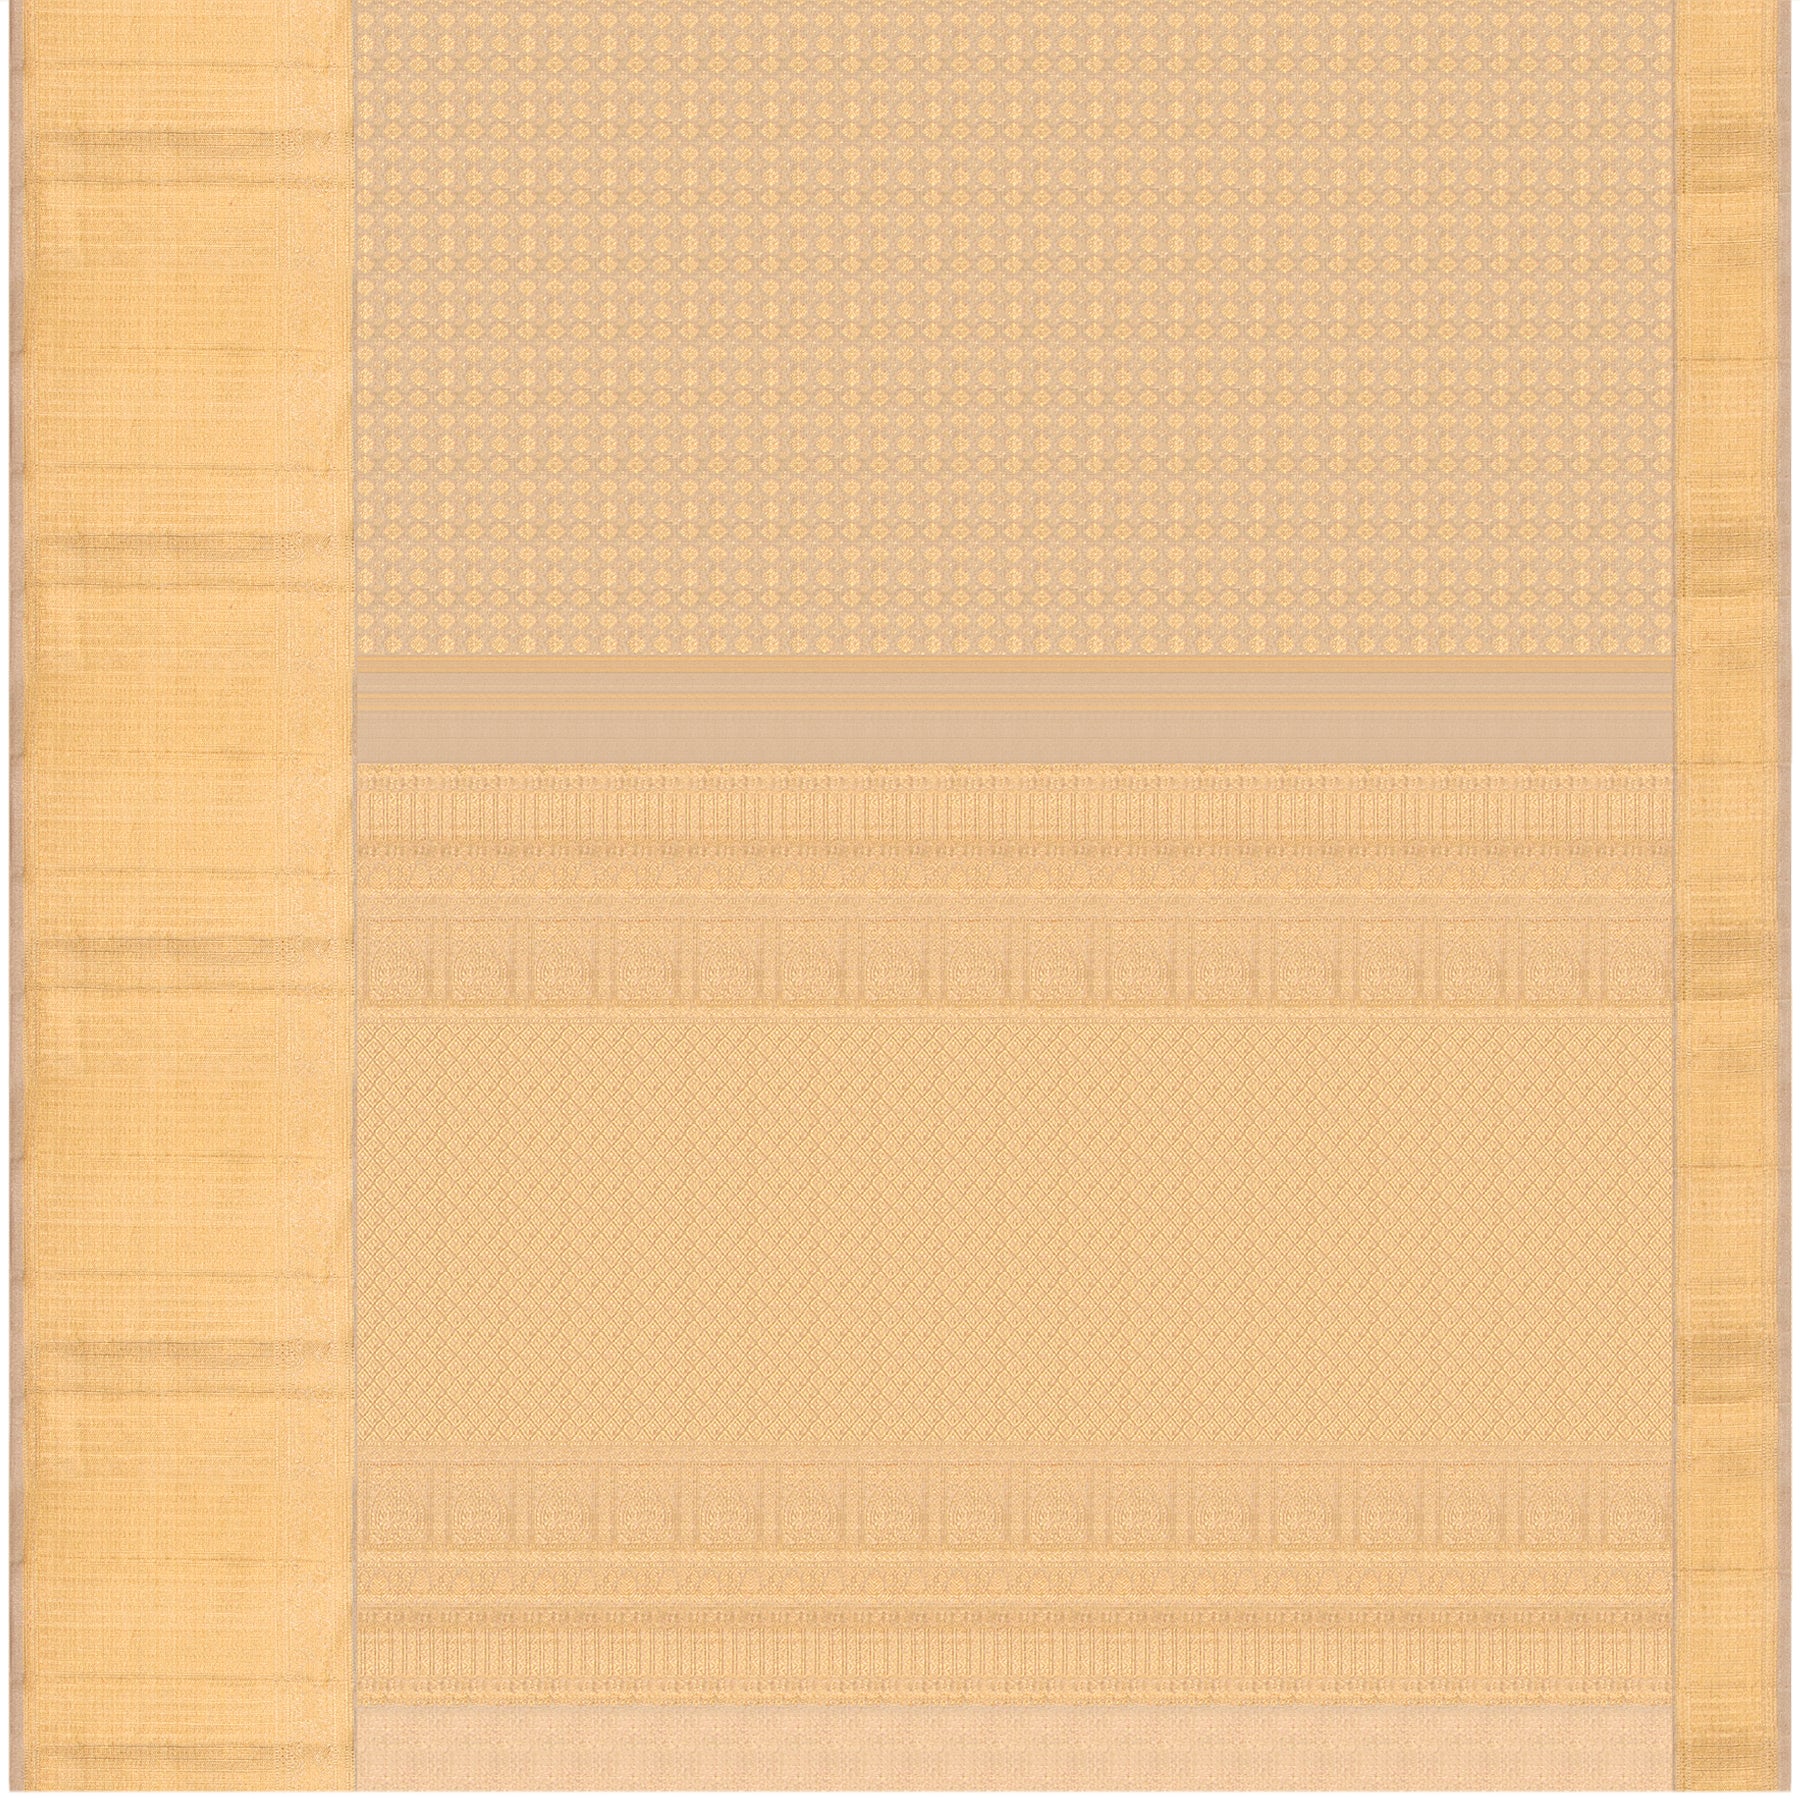 Kanakavalli Kanjivaram Silk Sari 23-110-HS001-09987 - Full View